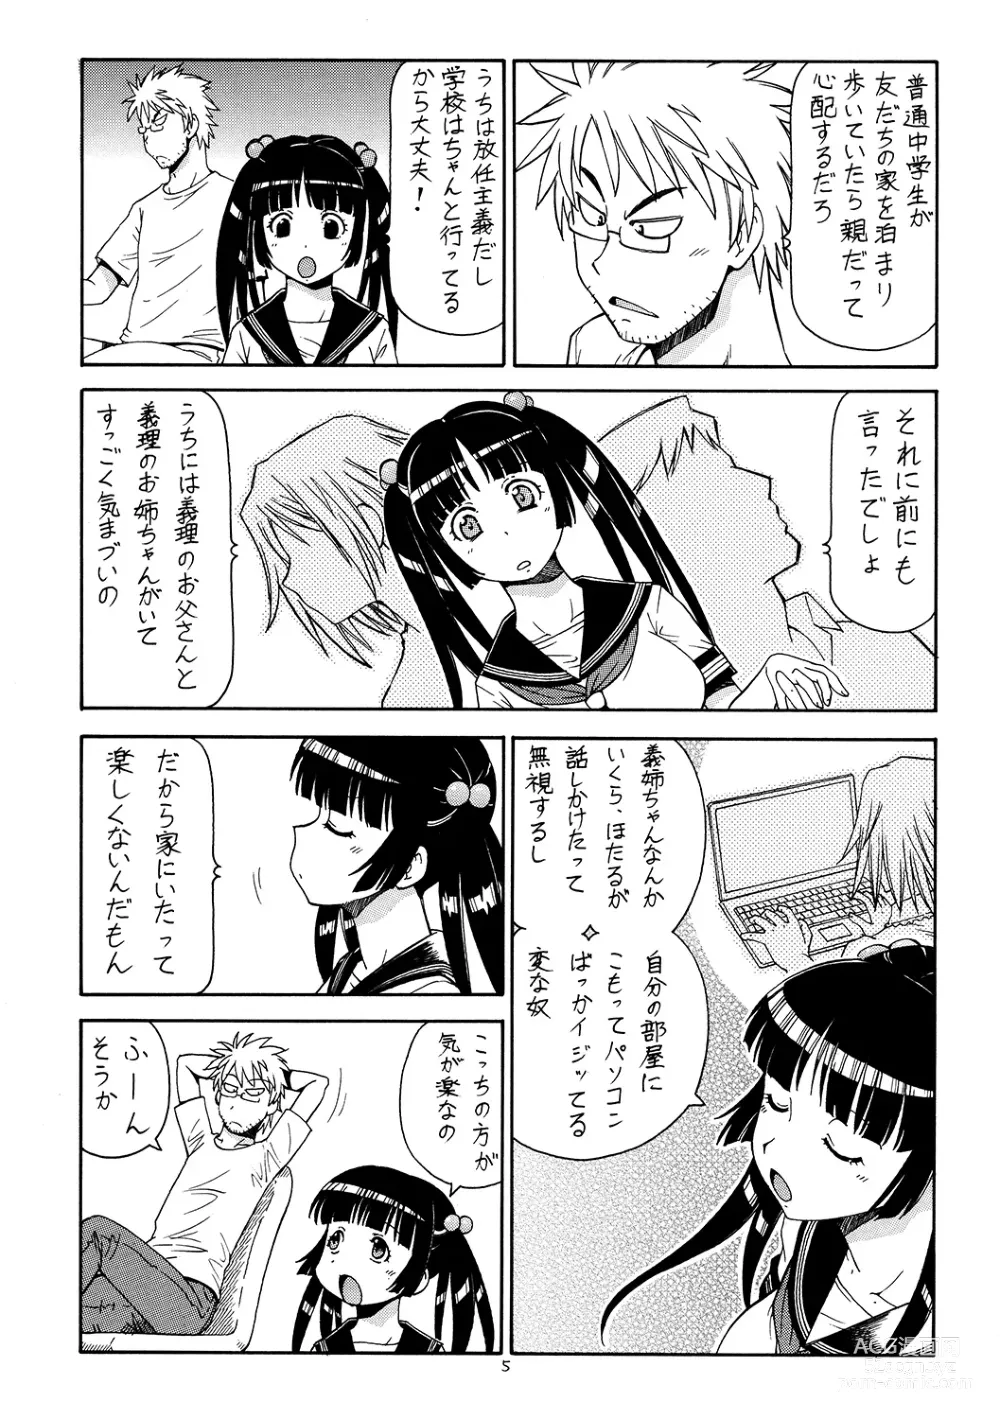 Page 6 of doujinshi Ita Yome Monogatari 2